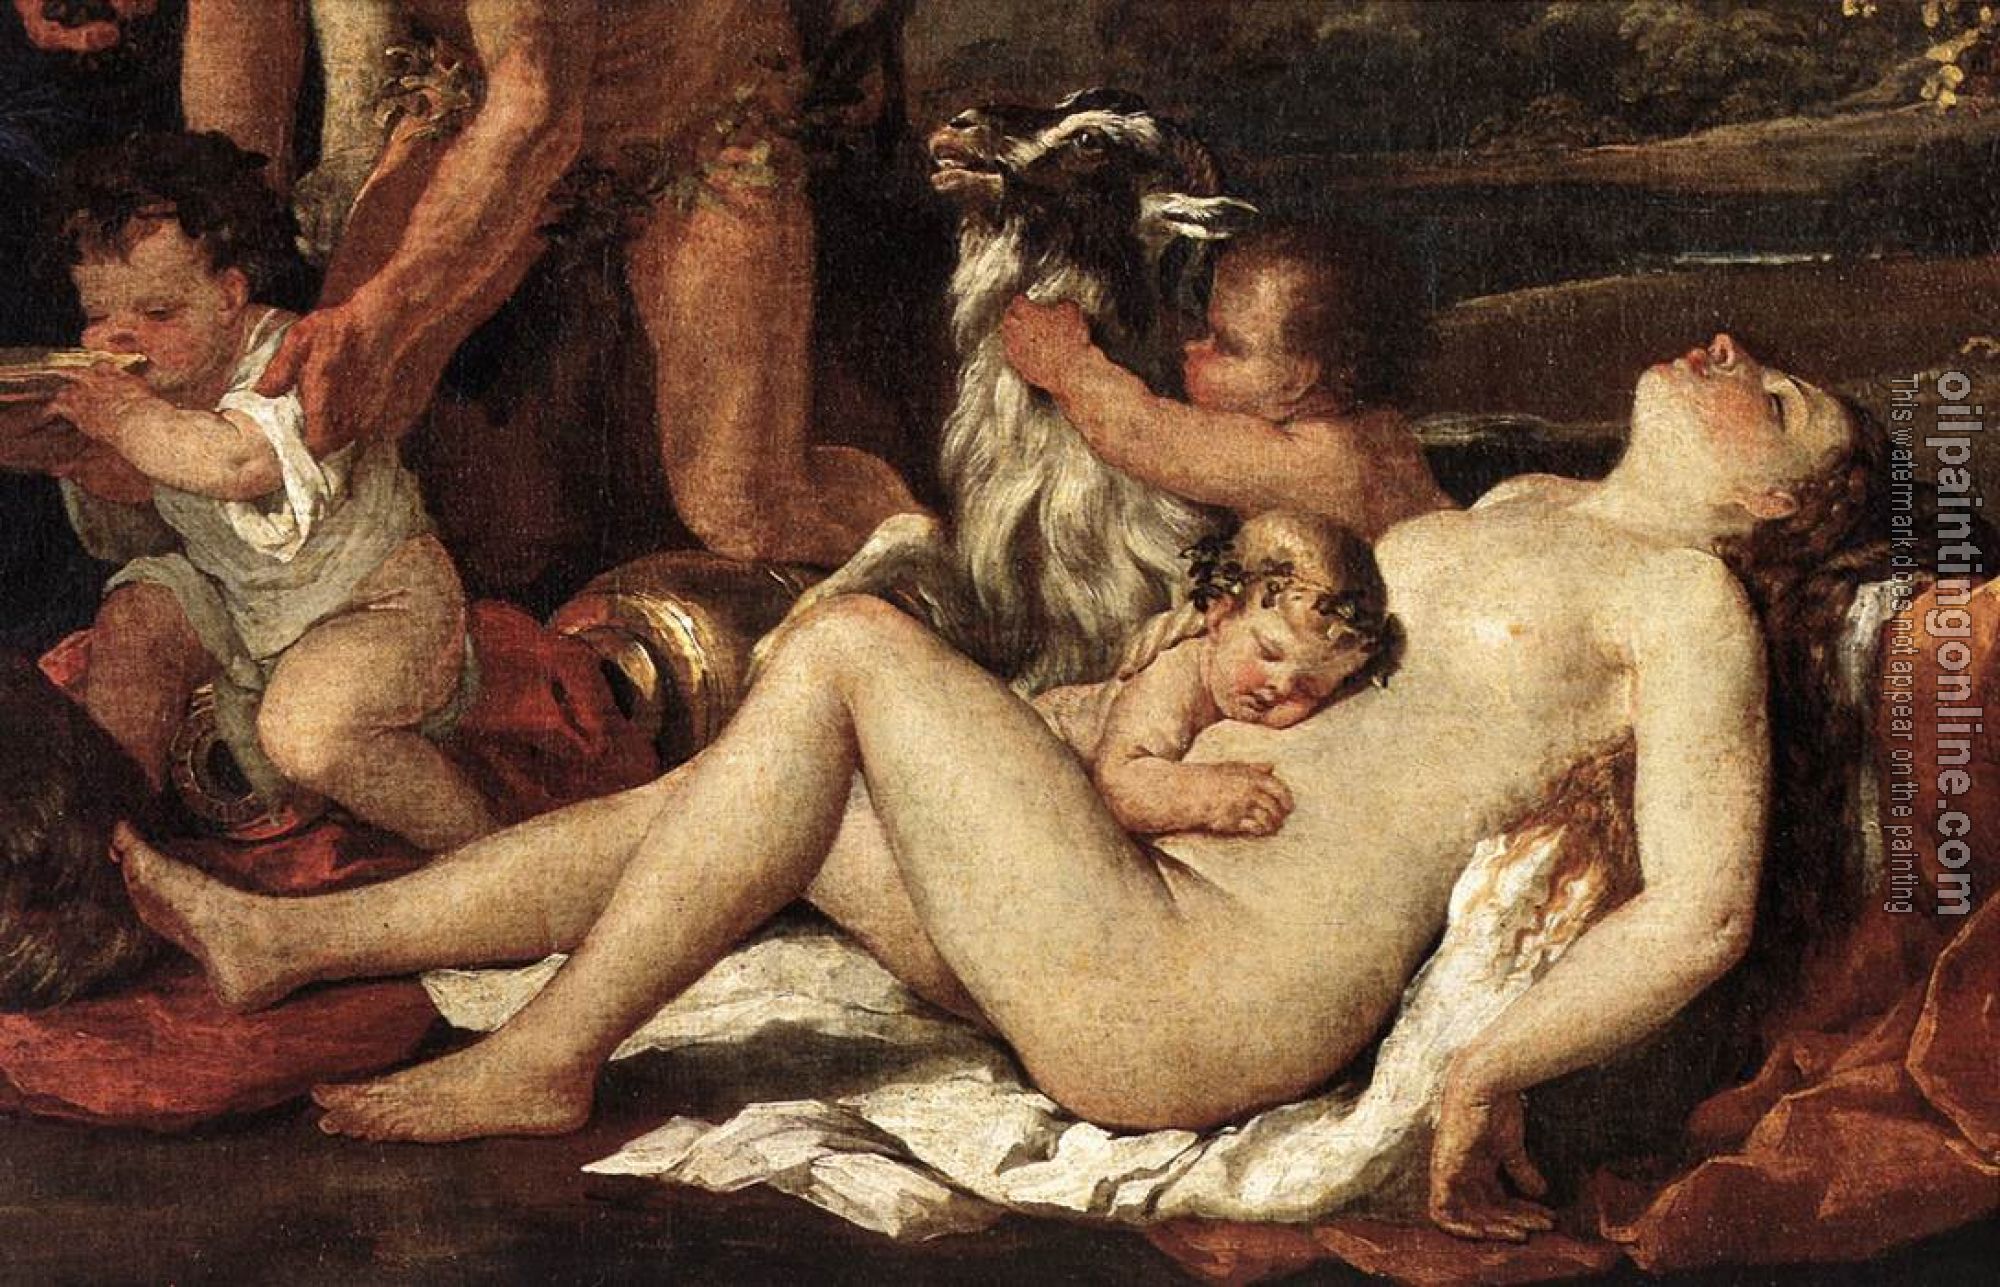 Poussin, Nicolas - The Nurture of Bacchus detail